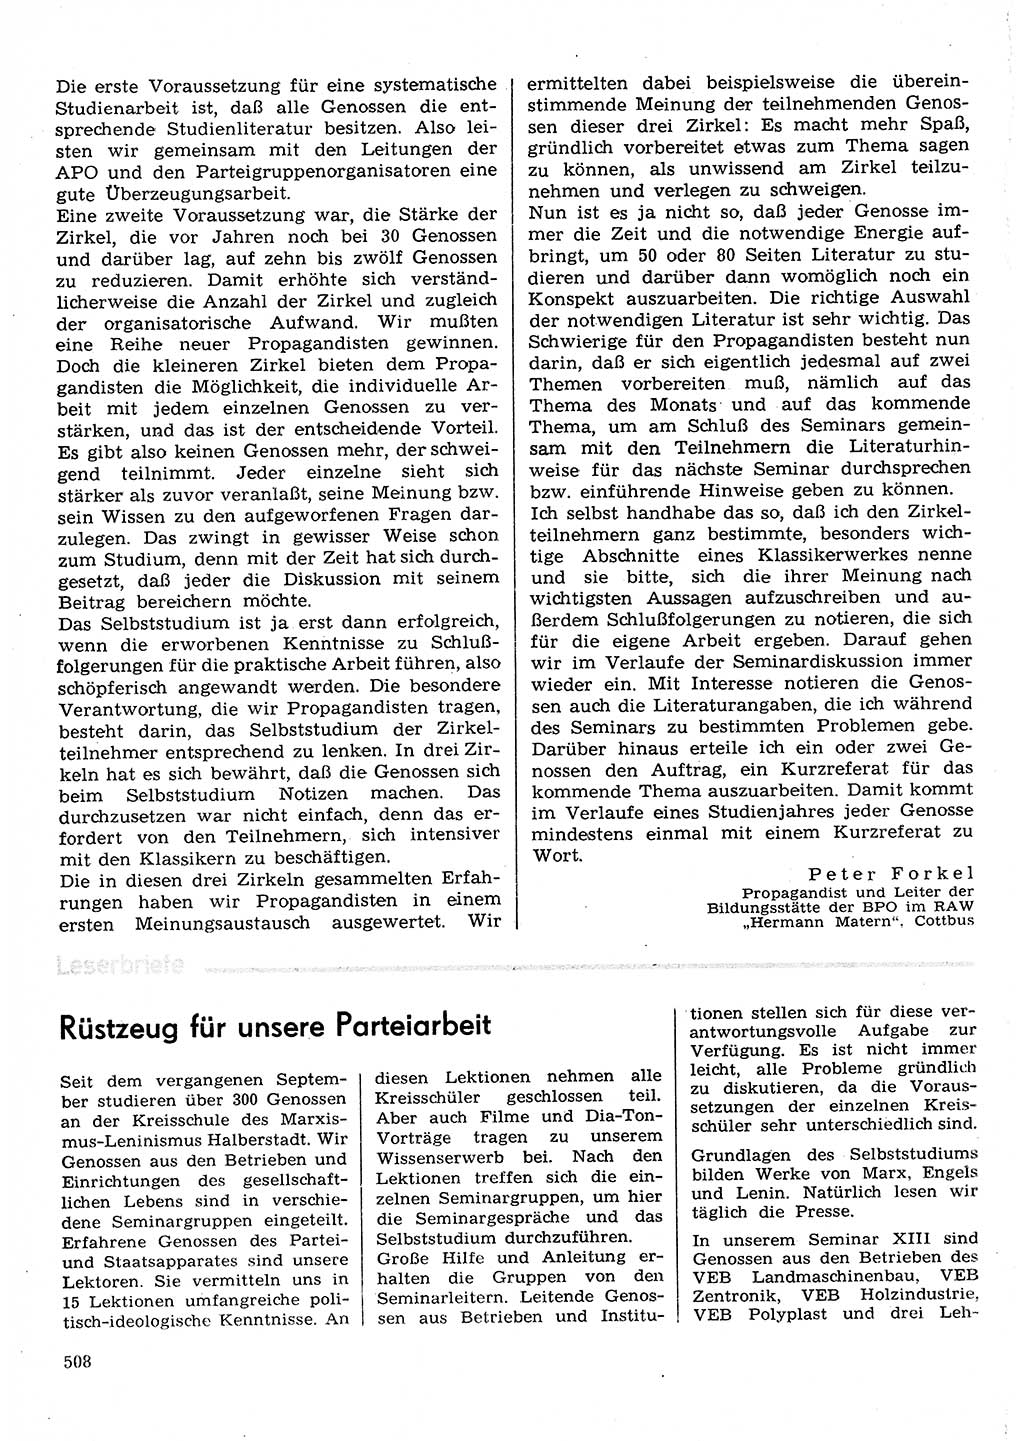 Neuer Weg (NW), Organ des Zentralkomitees (ZK) der SED (Sozialistische Einheitspartei Deutschlands) für Fragen des Parteilebens, 30. Jahrgang [Deutsche Demokratische Republik (DDR)] 1975, Seite 508 (NW ZK SED DDR 1975, S. 508)